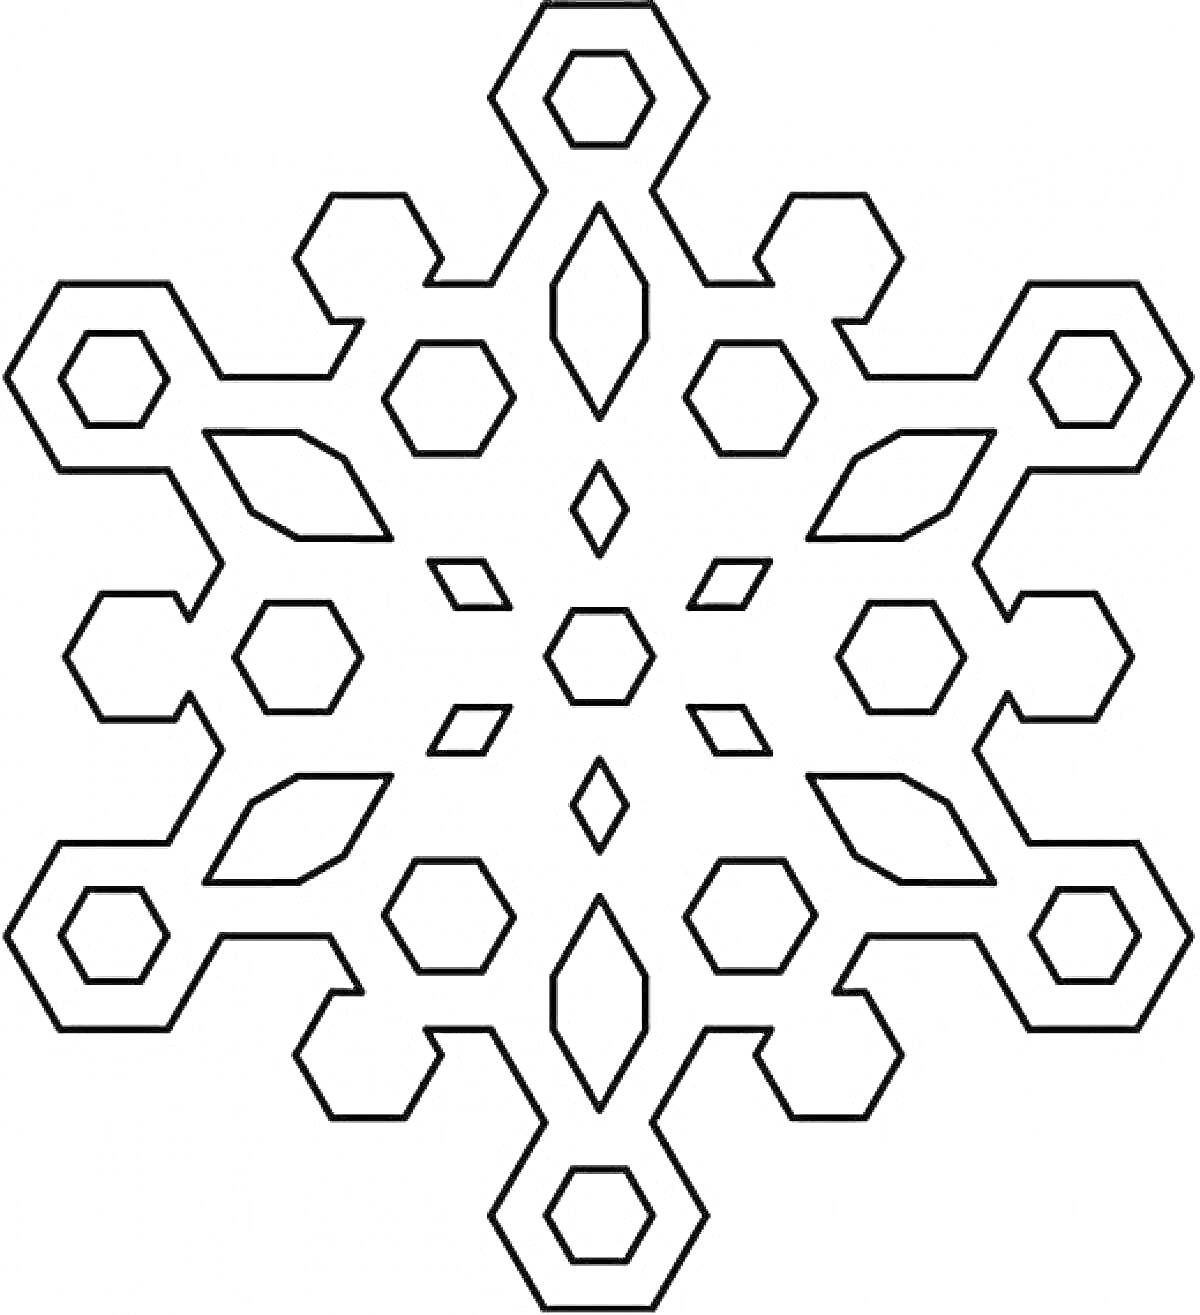 Раскраска снежинка, состоящая из шестиугольников, ромбов и восьмиугольников